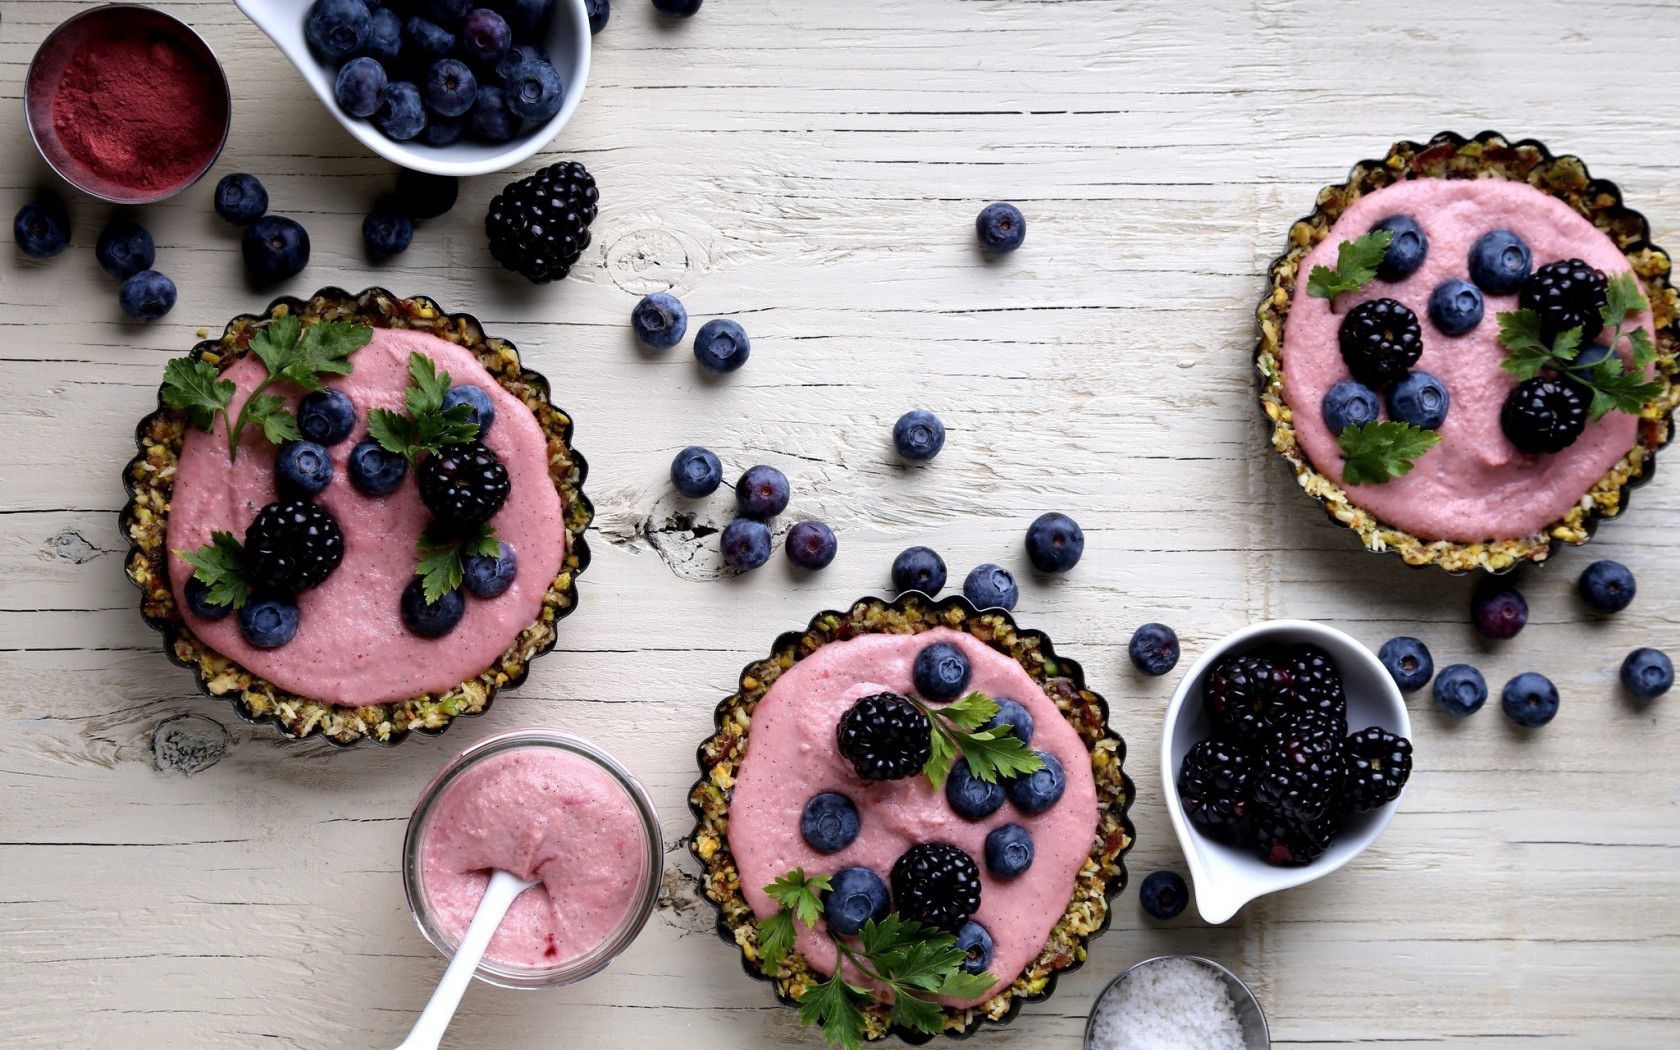 Free download wallpaper Desert, Berries, Food, Bilberries, Blackberry on your PC desktop